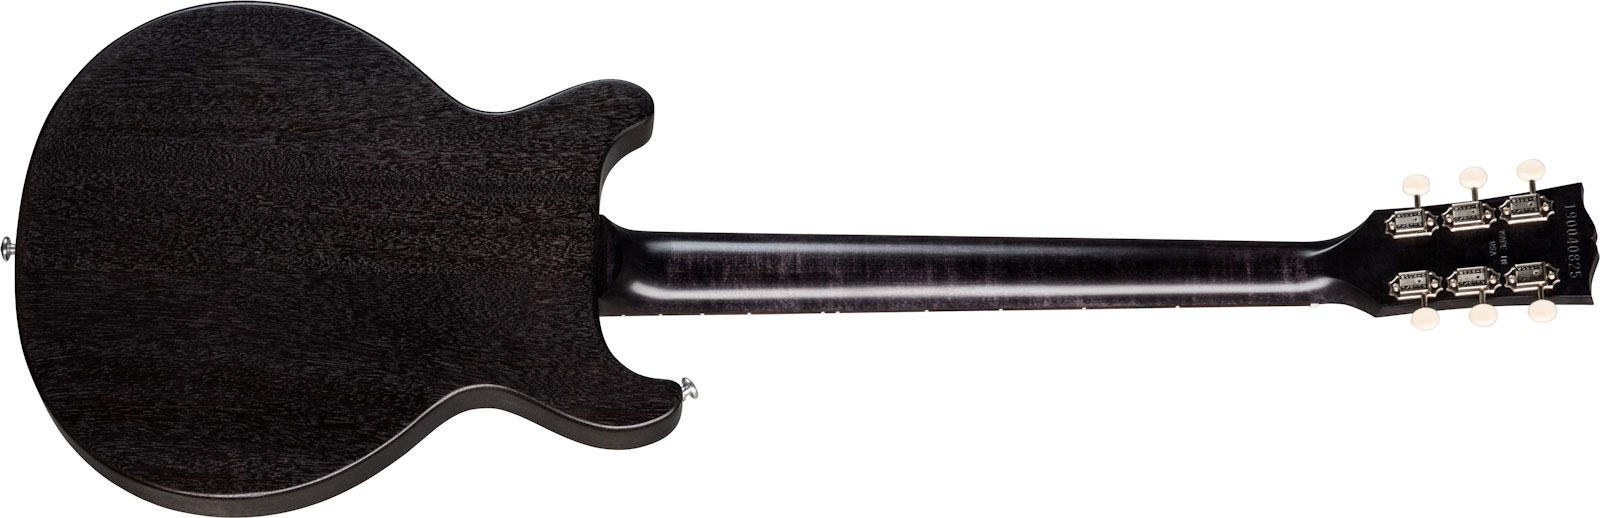 Gibson Les Paul Special Tribute Dc Modern P90 - Worn Ebony - Guitare Électrique Double Cut - Variation 1